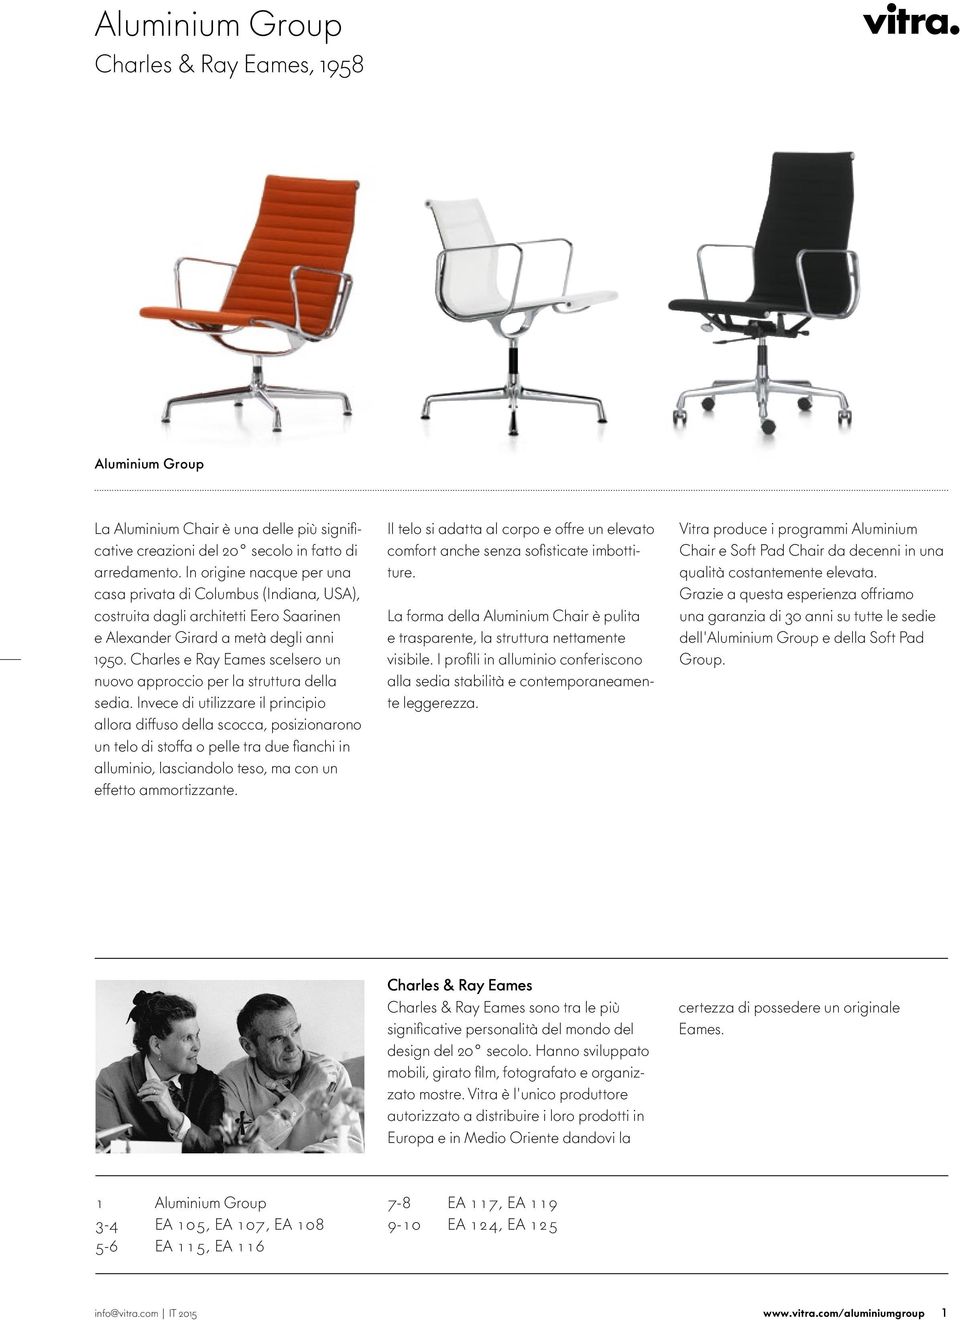 Charles e Ray Eames scelsero un nuoo approccio per la struttura della sedia.